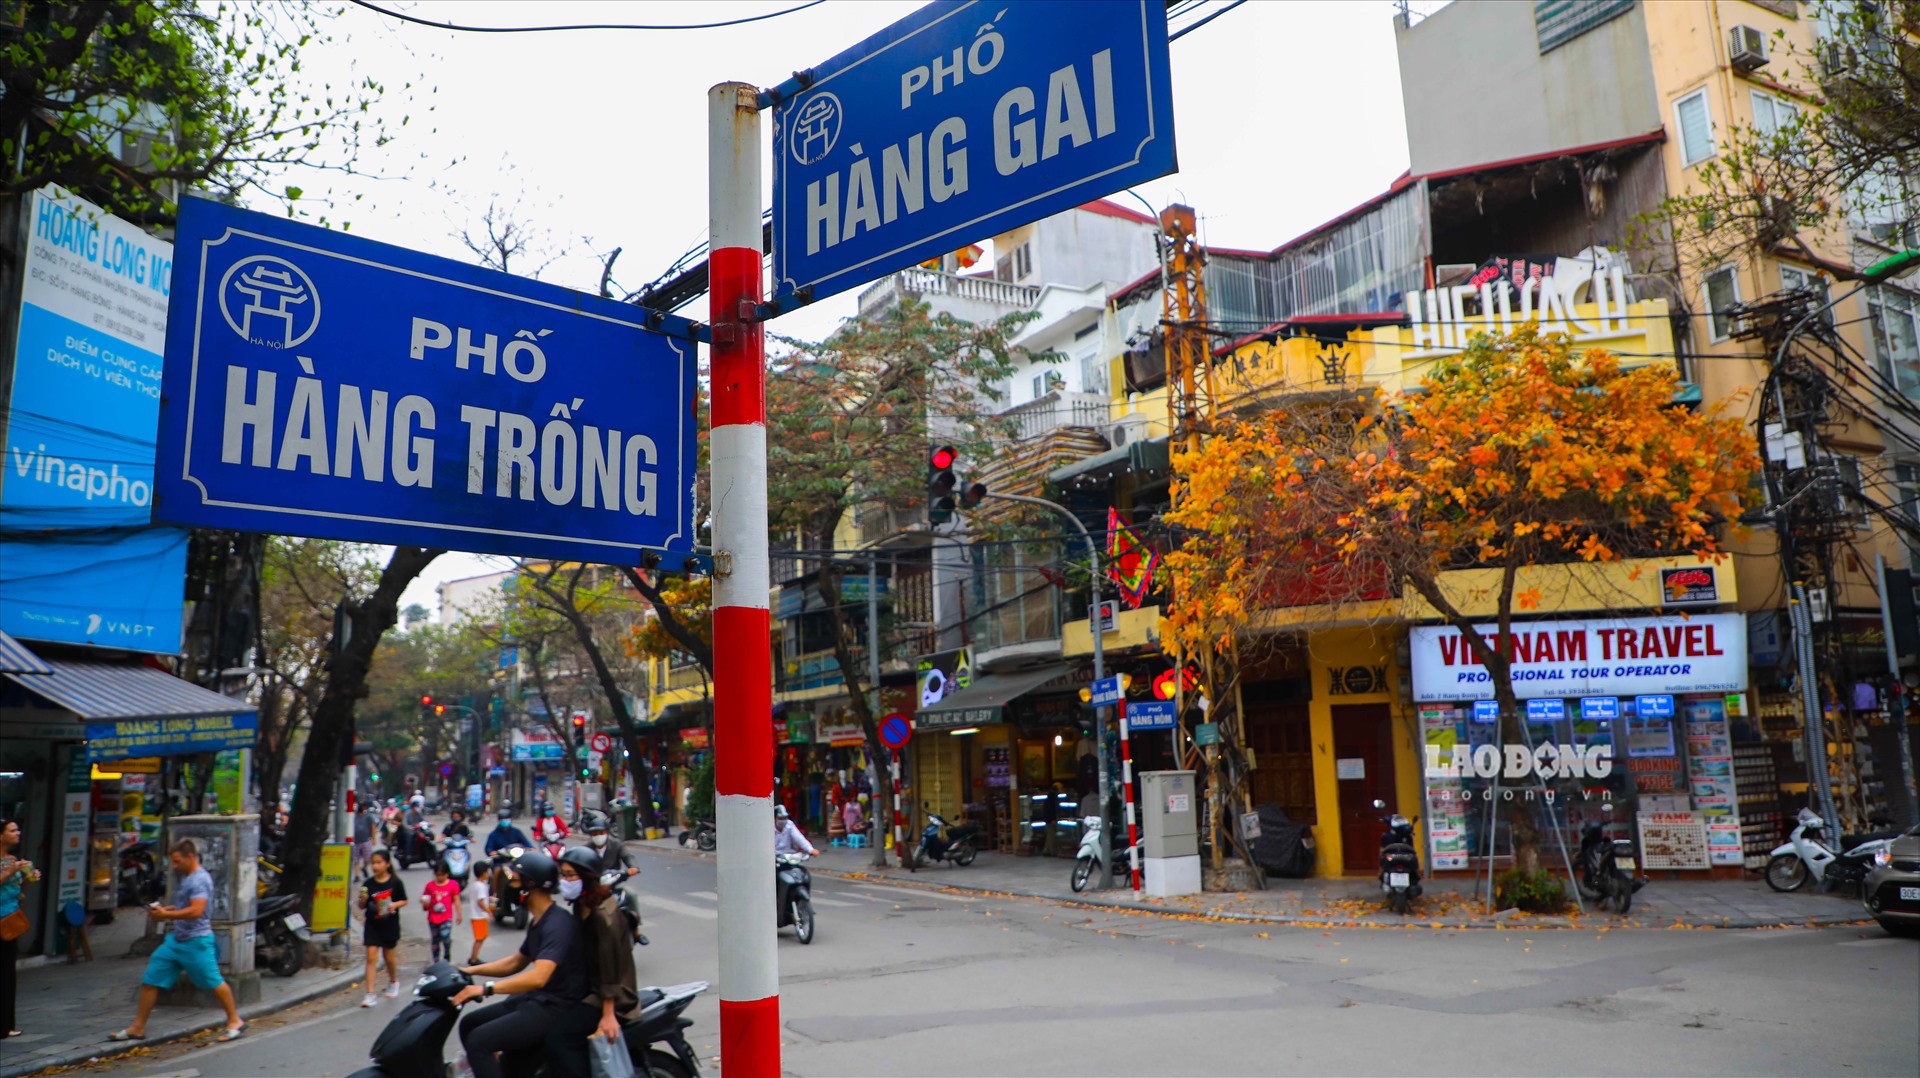 Ngoài phố Nhà Chung, nhiều tuyến phố hiện đang được neo mức giá cao hơn rất nhiều so với mức niêm yết của UBND Hà Nội. Trong đó có thể kể đến phố Gia Ngư (888 triệu/m2), phố Trần Bình Trọng (878 triệu/m2), phố Hàng Trống (801 triệu/m2).